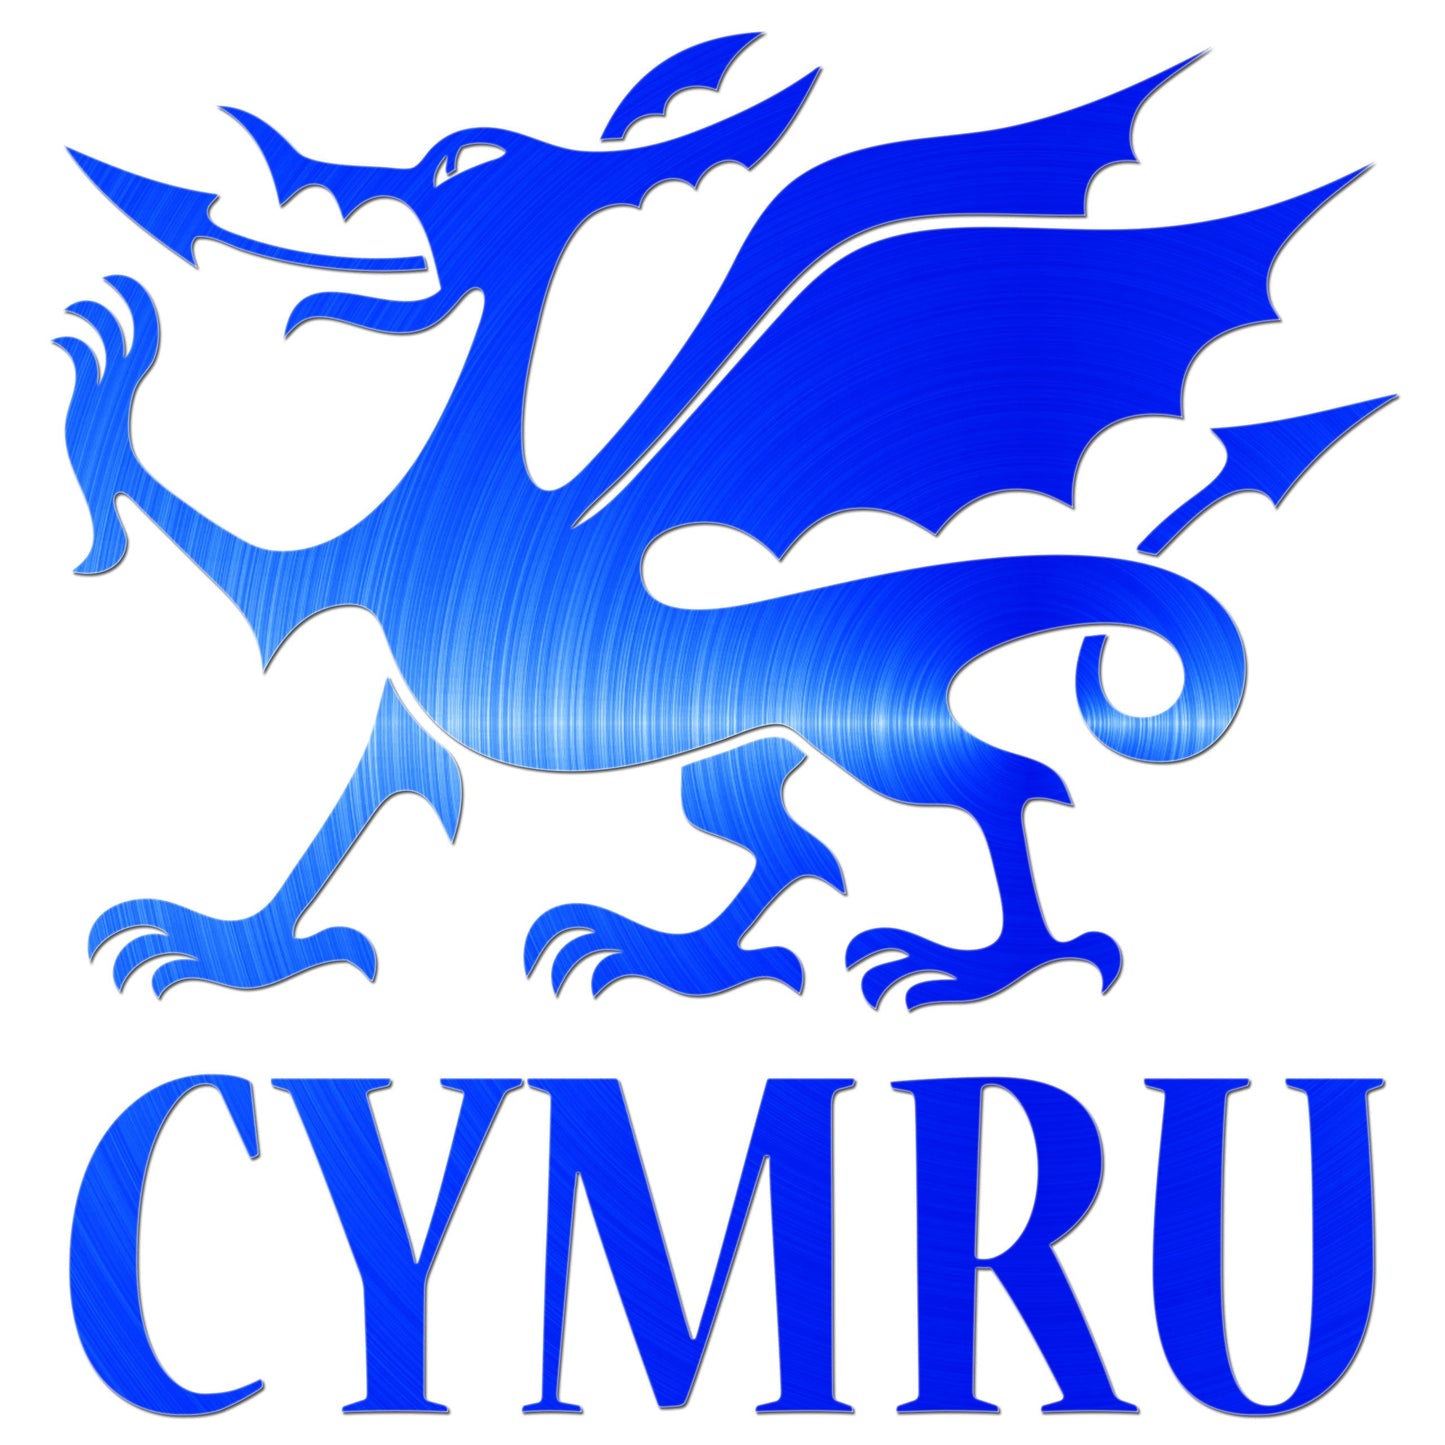 Cymru Dragon Sticker